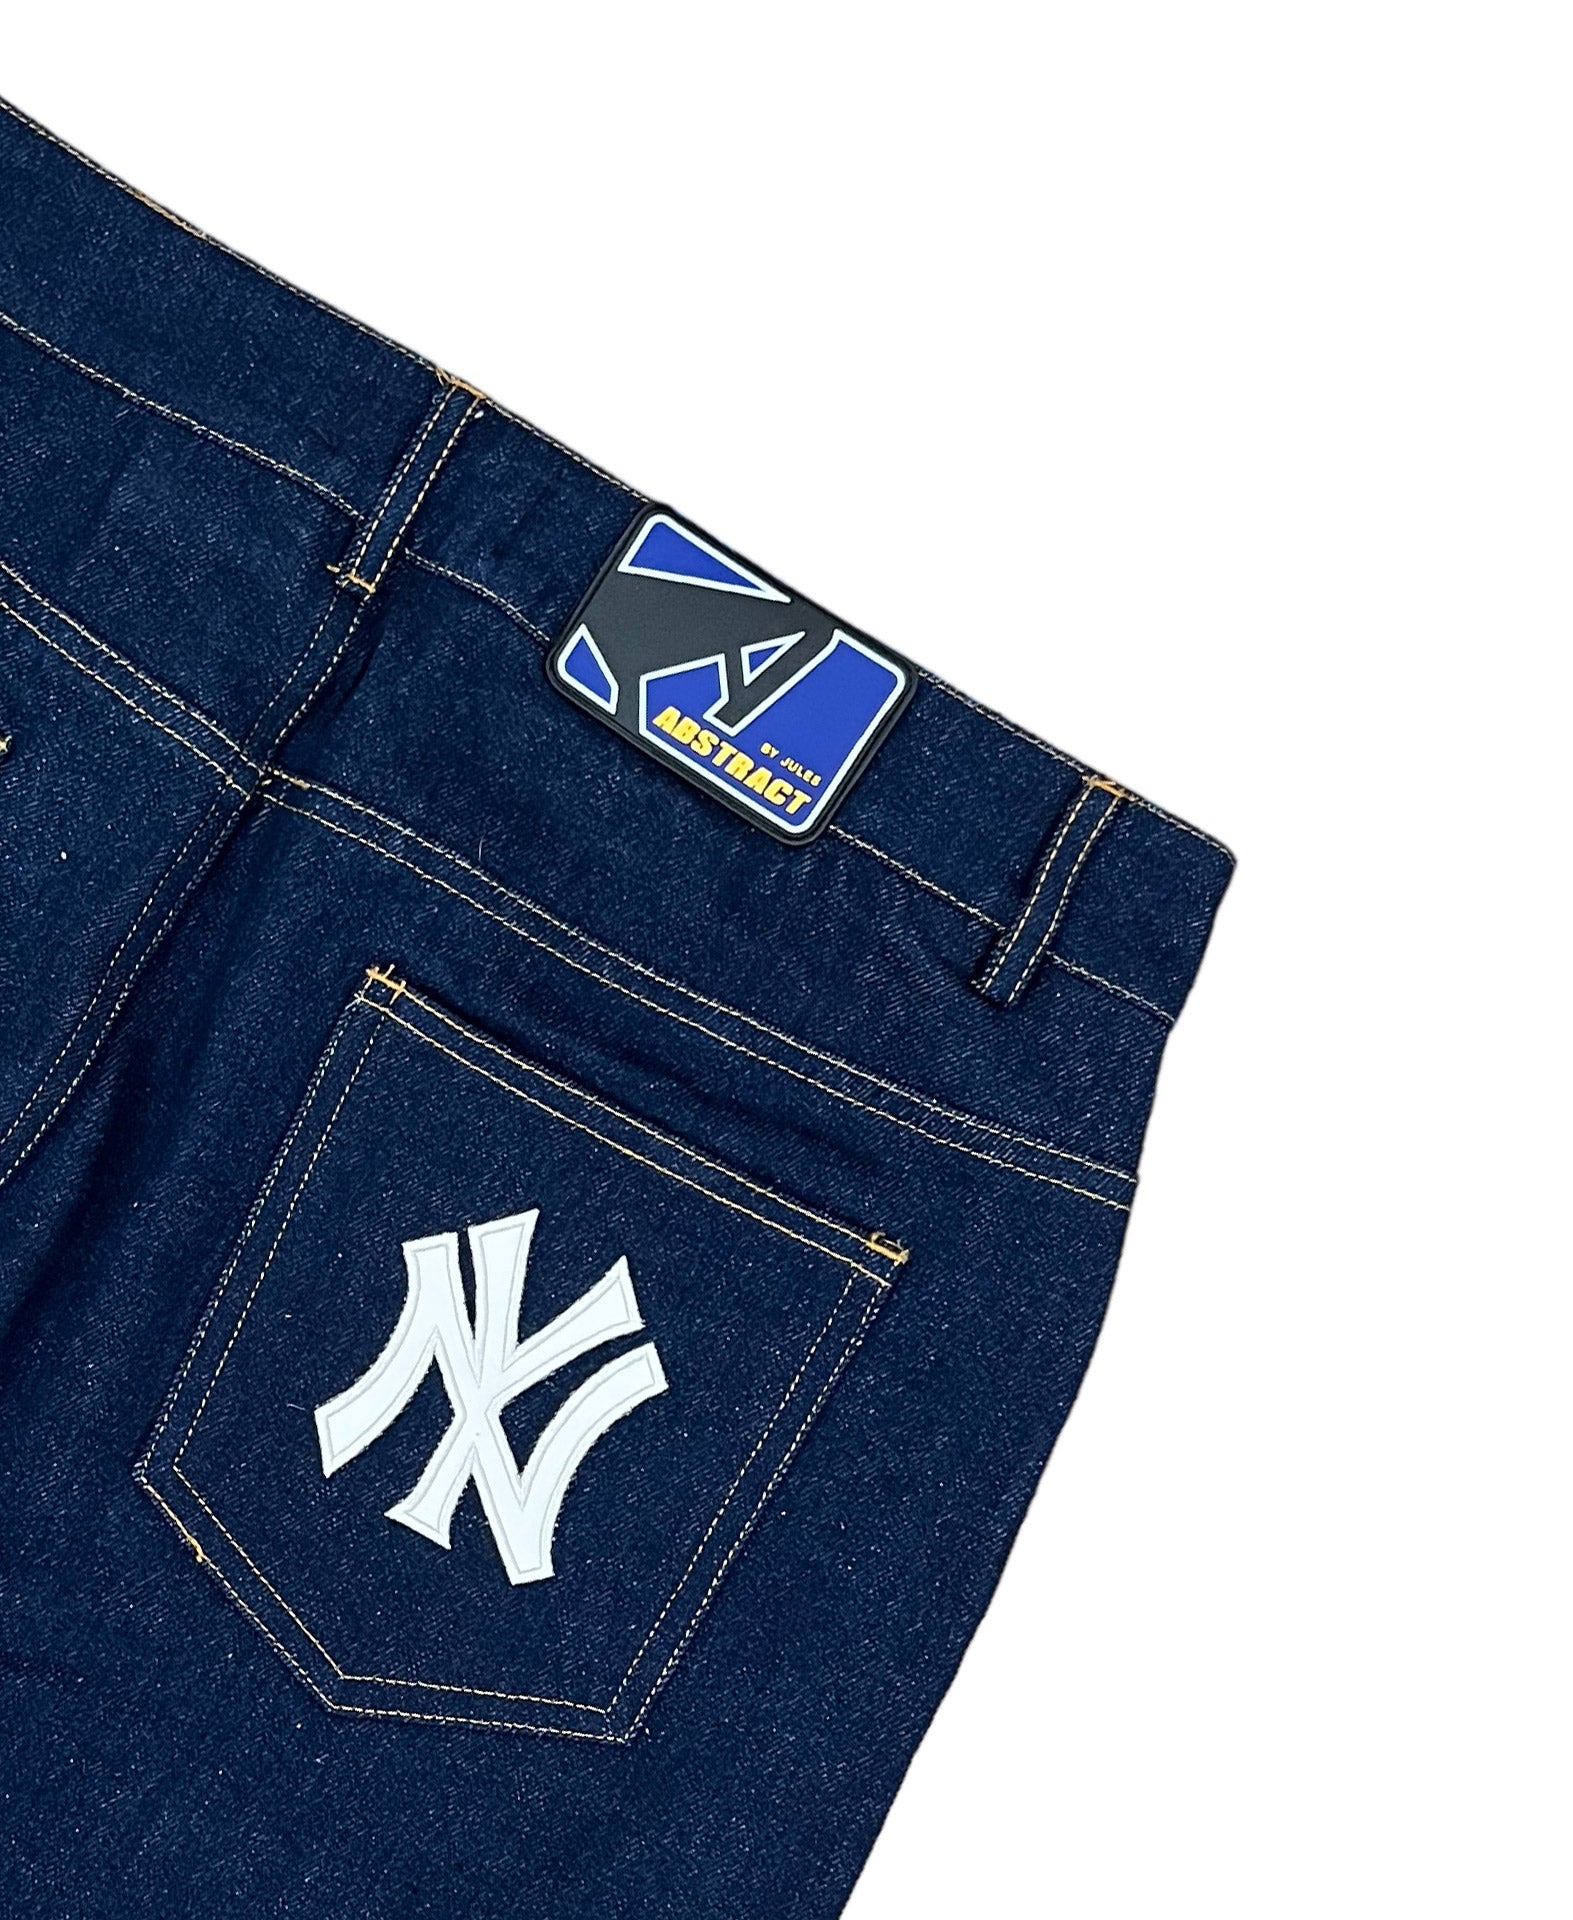 NY Patch Jeans - Navy